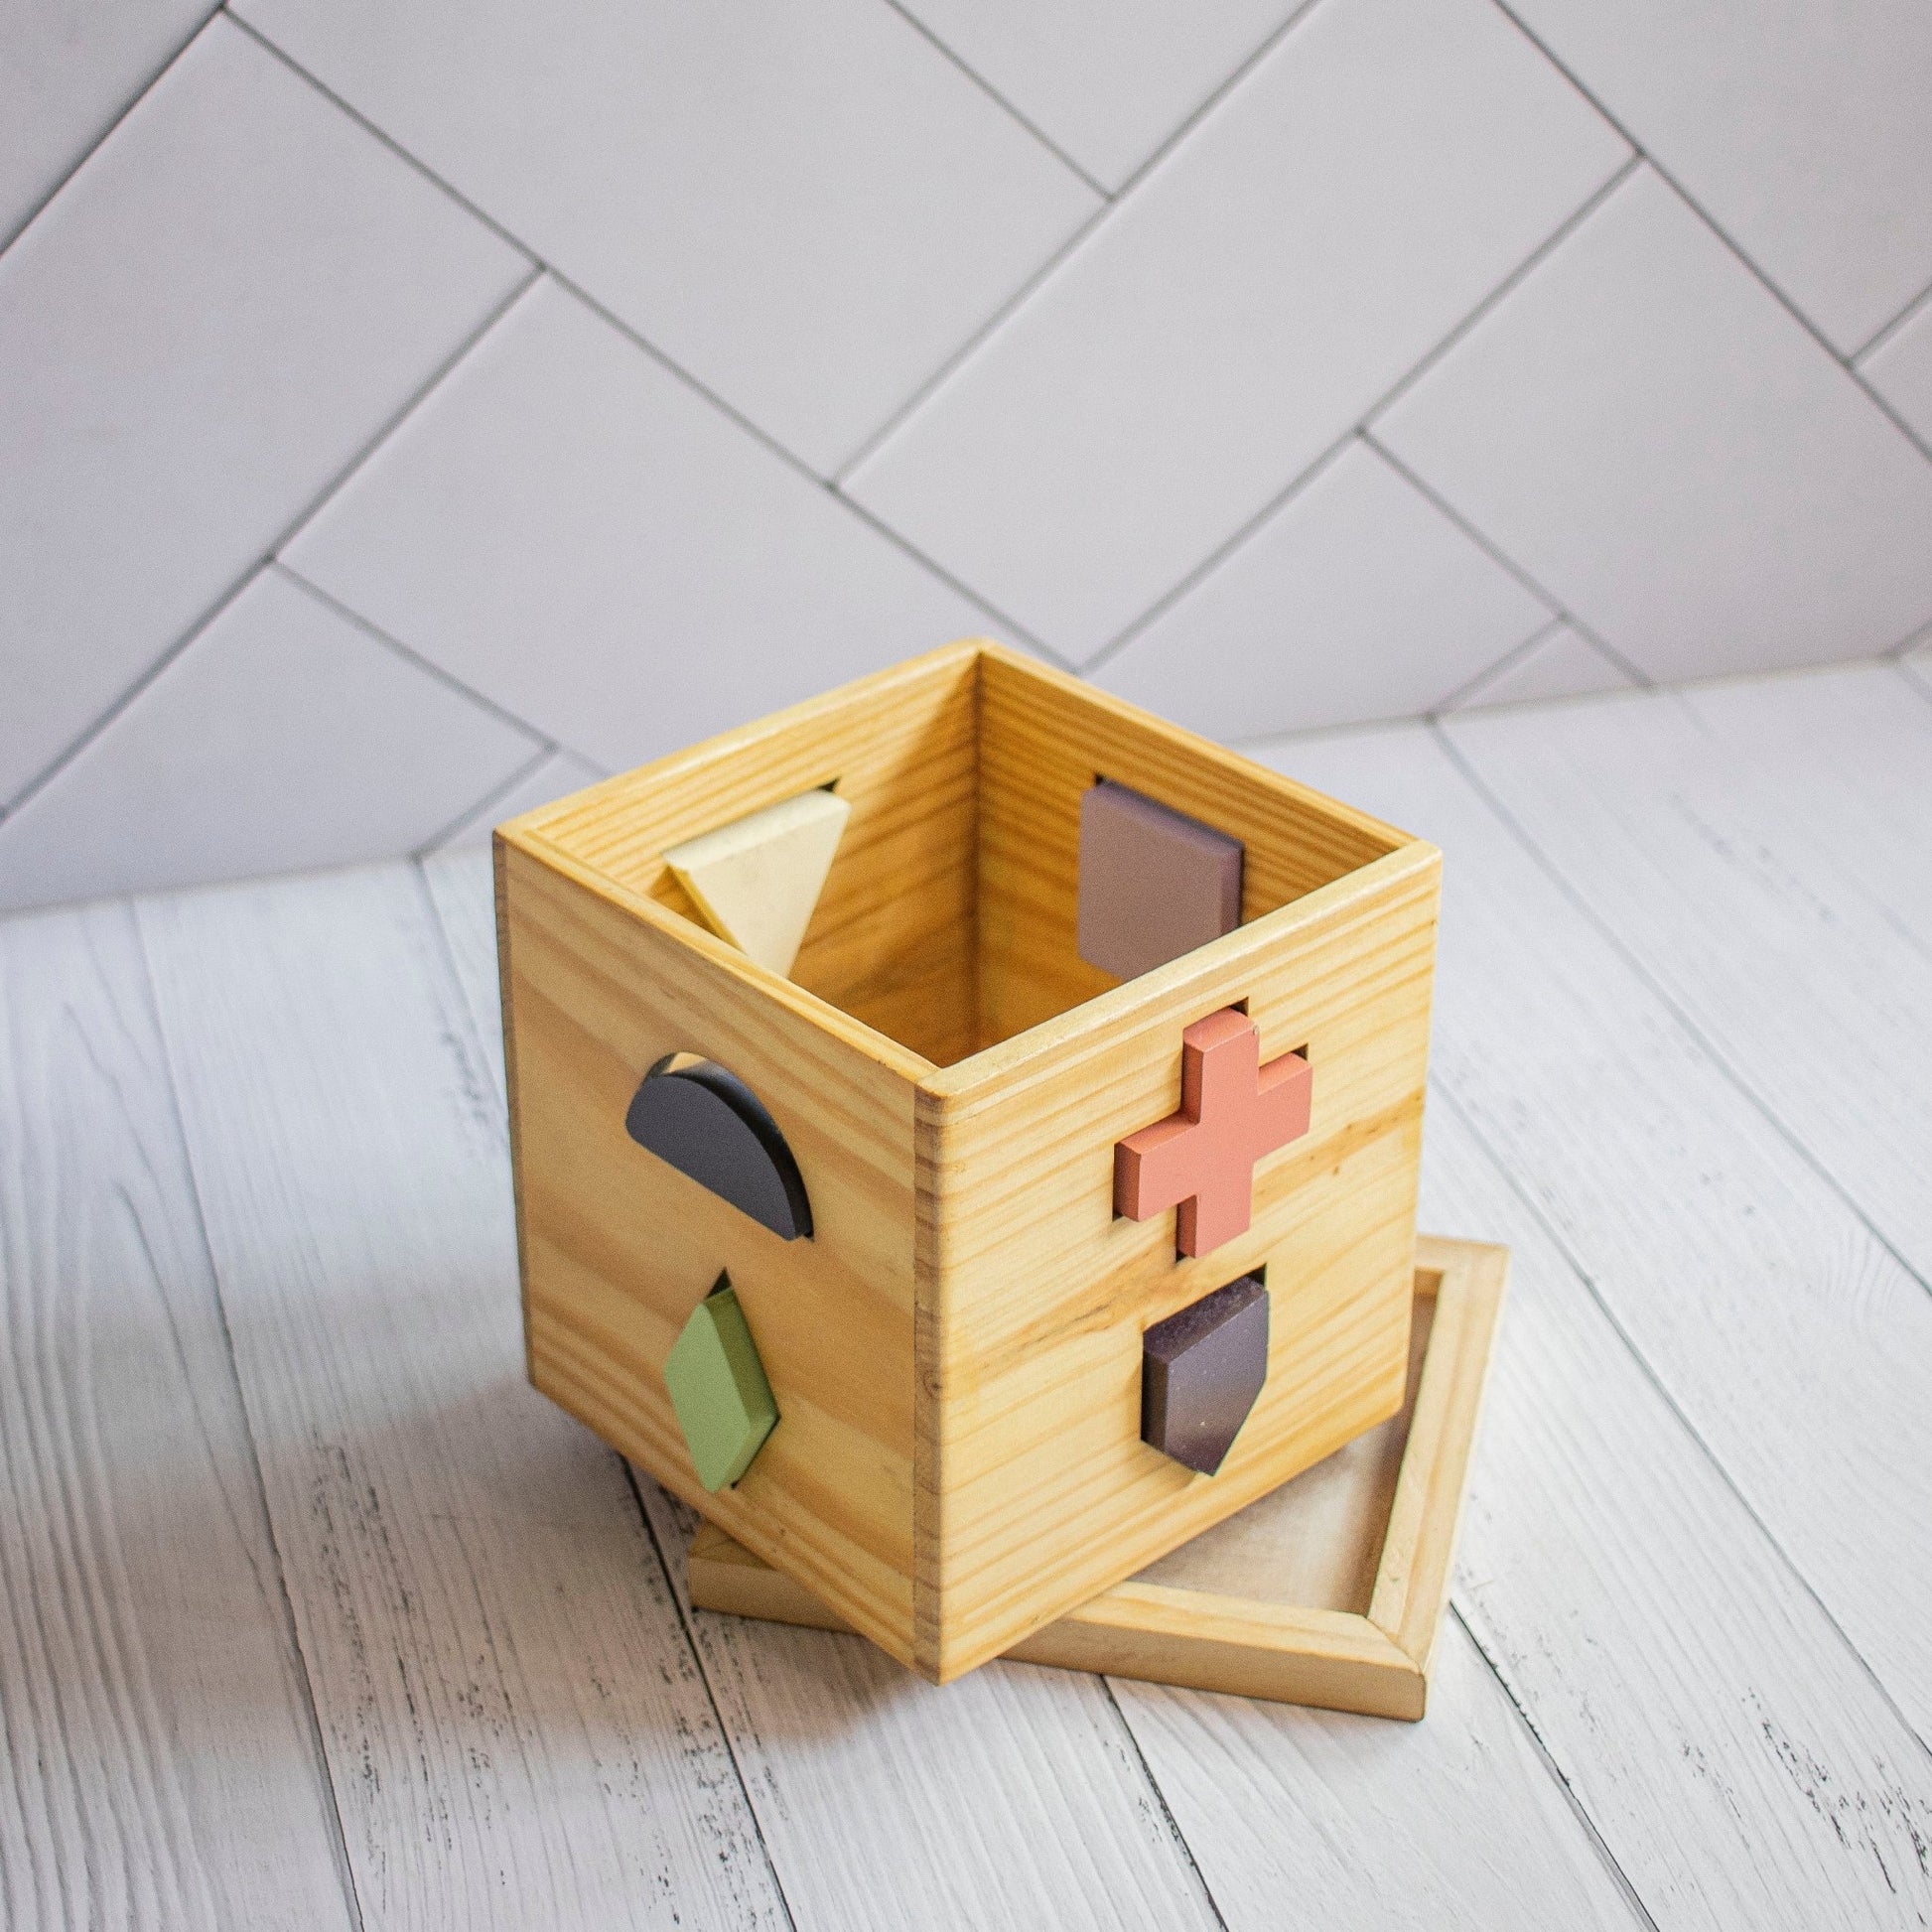 Wooden Shape Training Toy For Kids - Ebony Woodcraftswooden toys